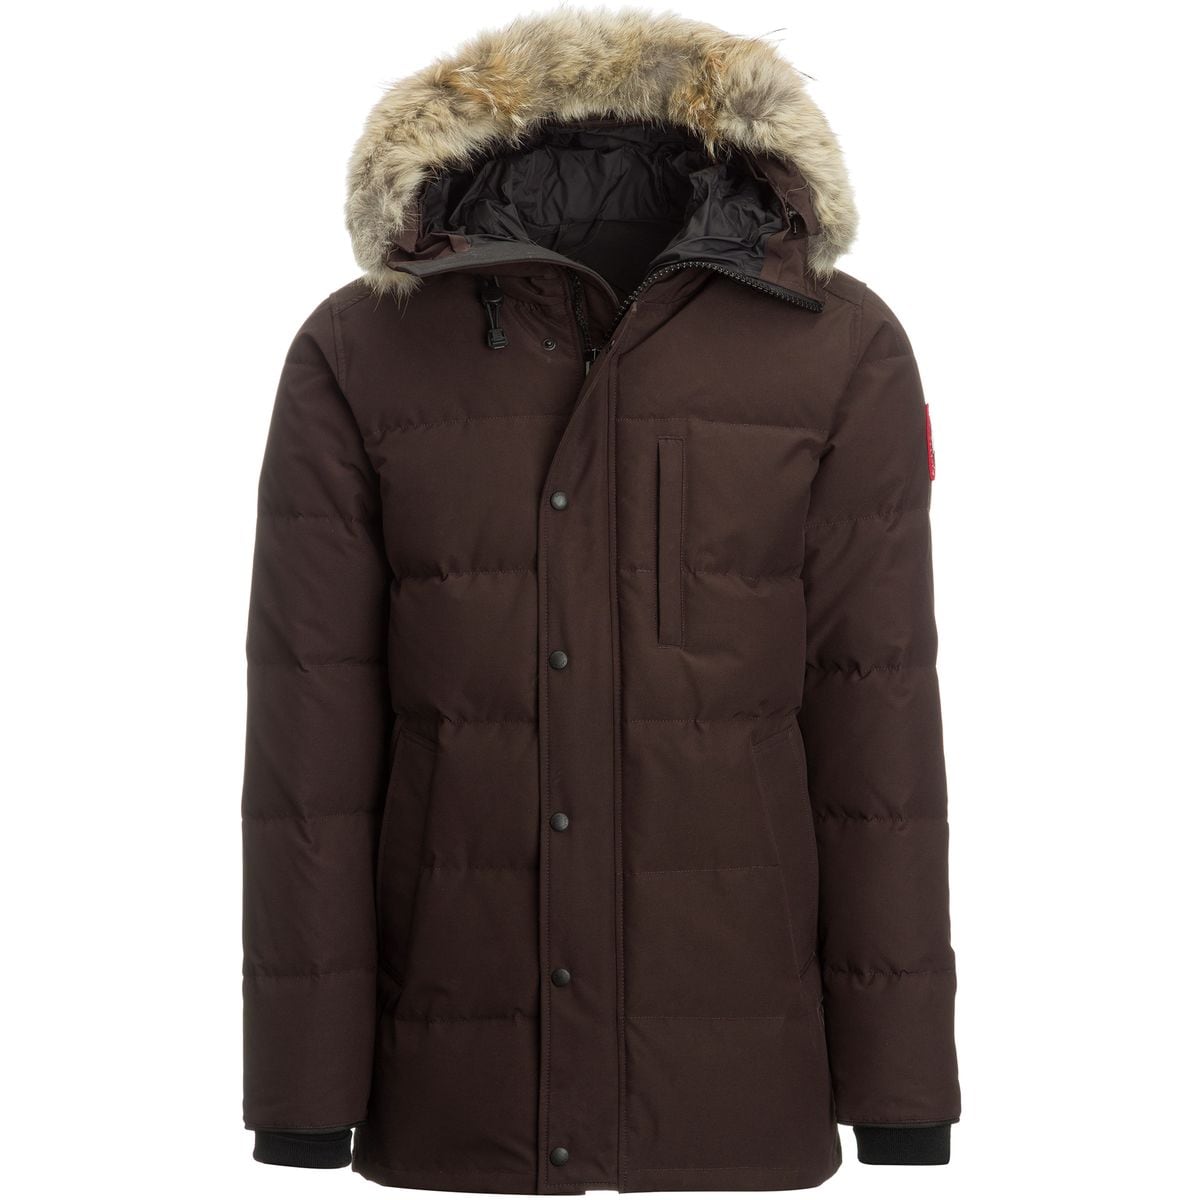 Canada Goose Jackets, Coats, Parkas - Men's